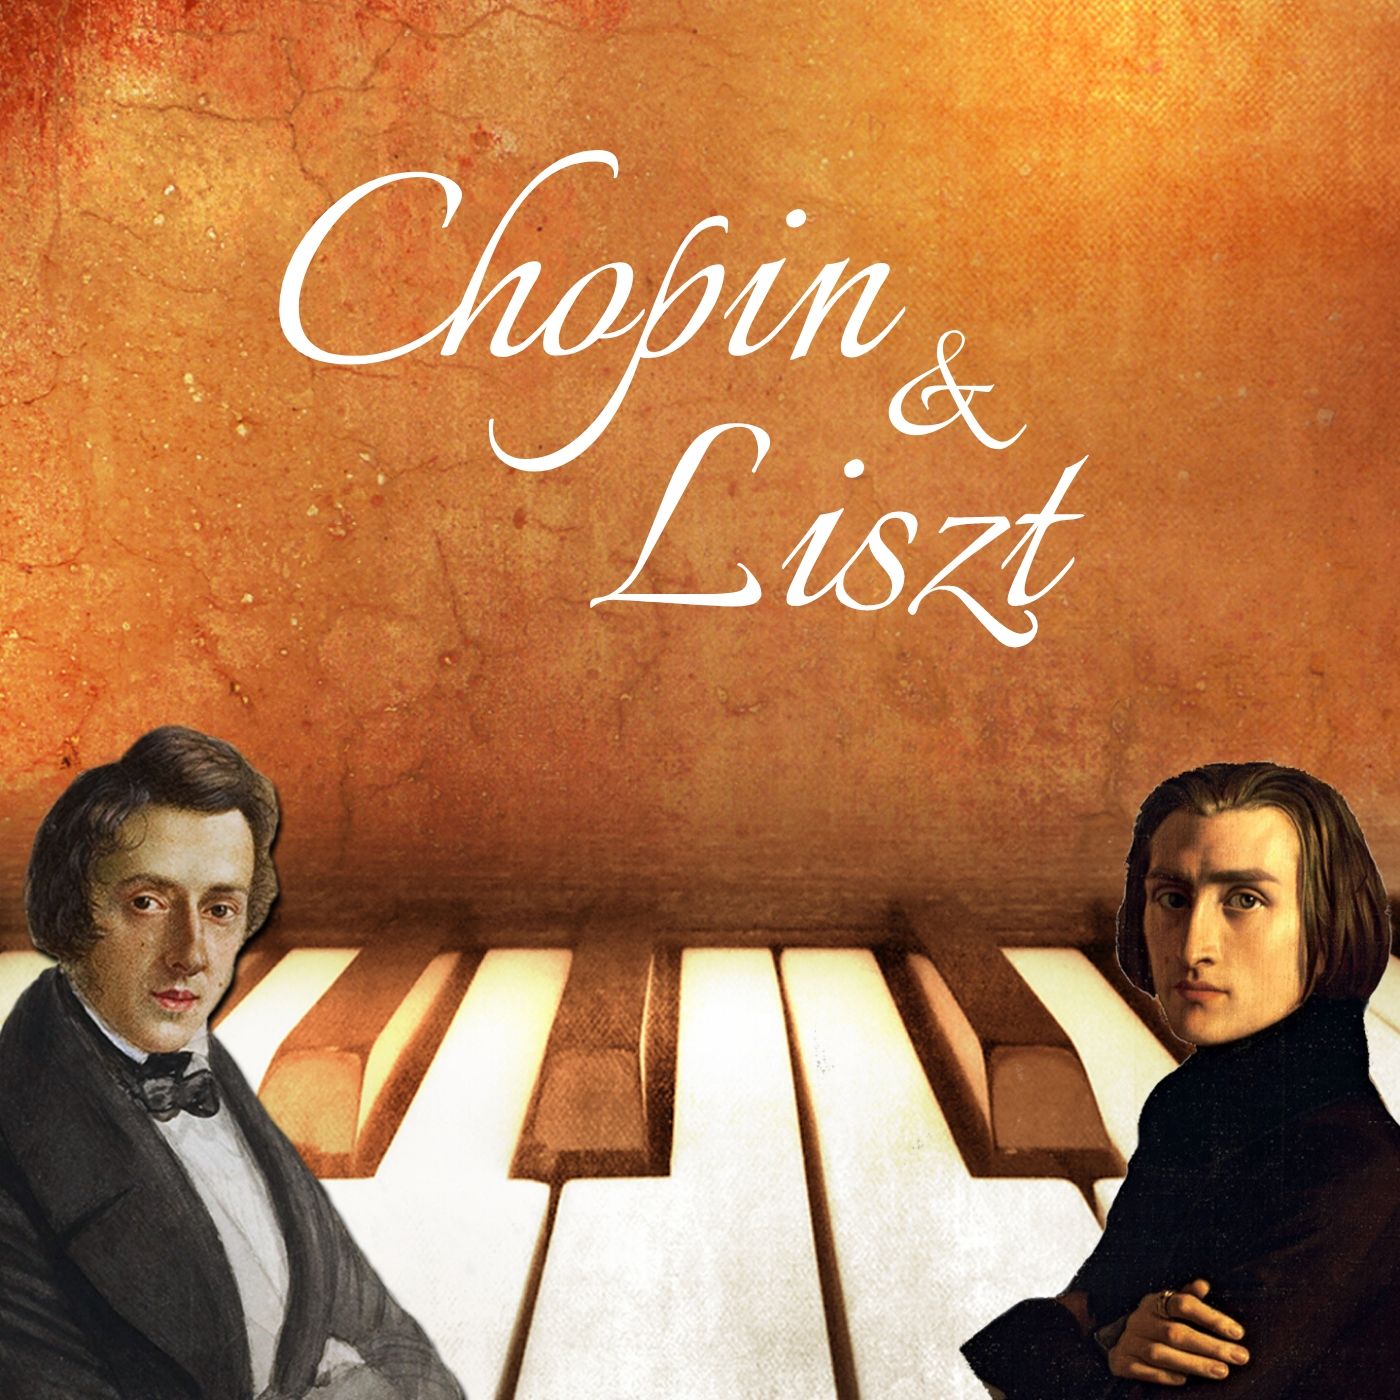 Chopin & Liszt